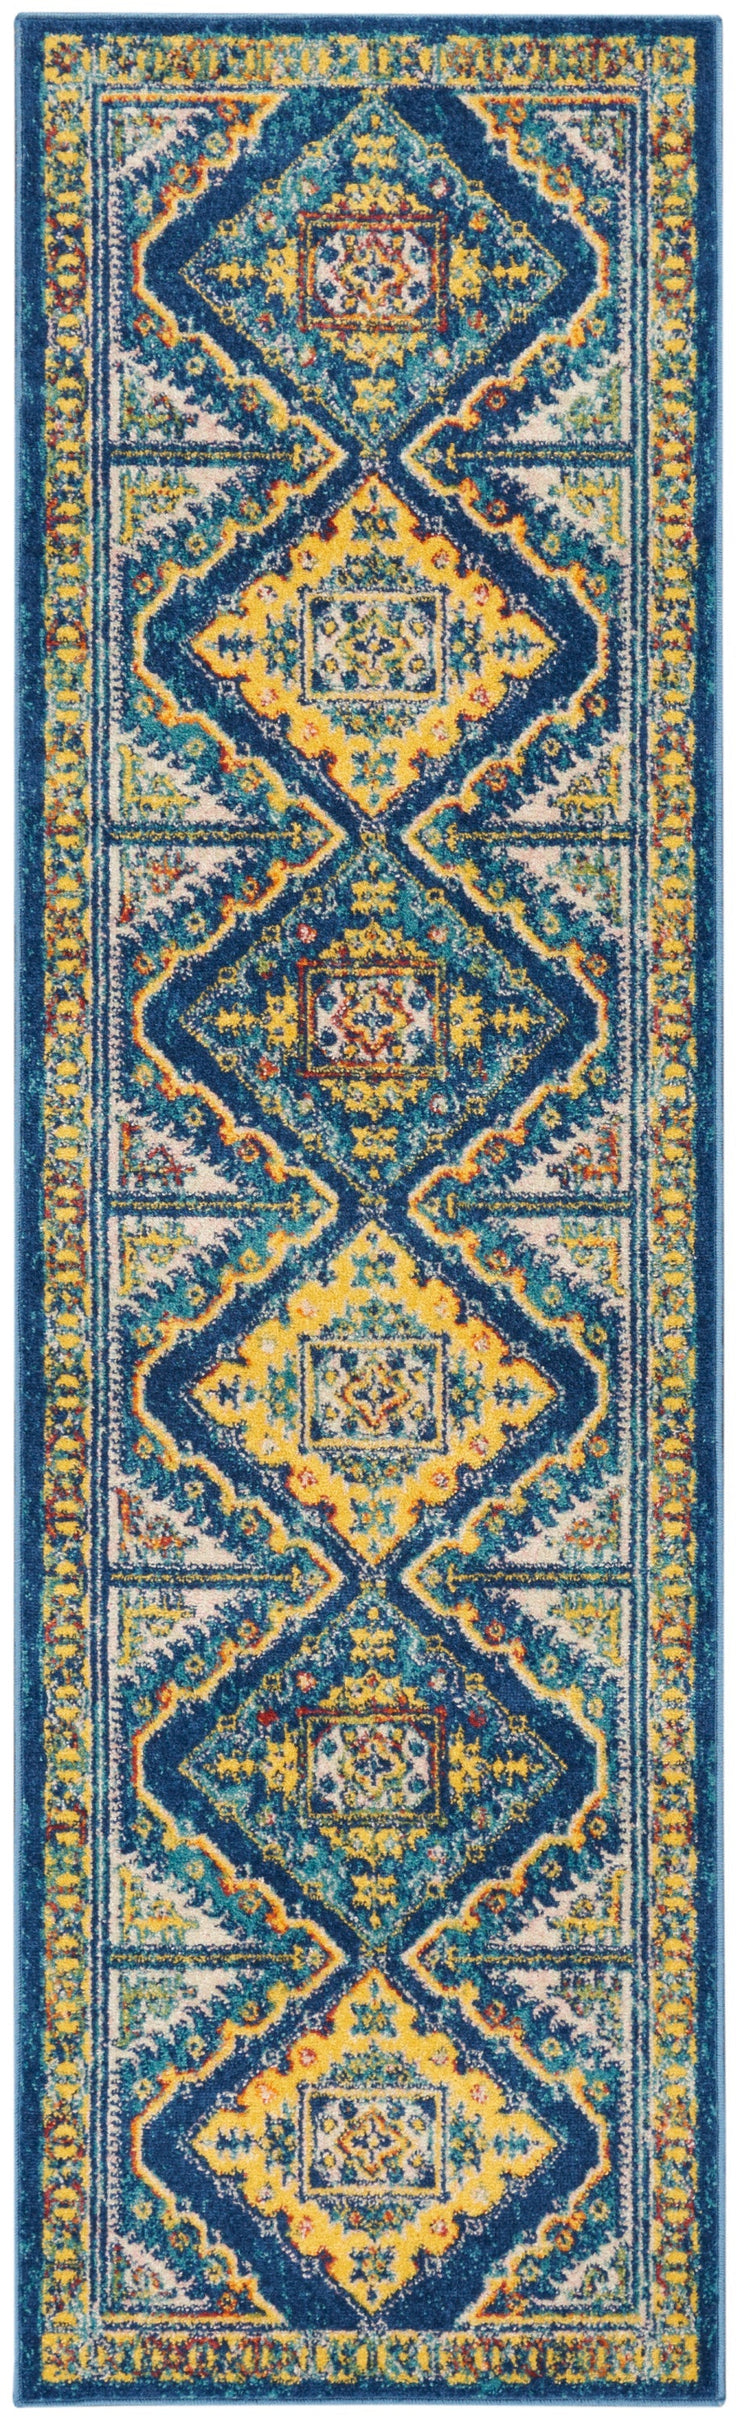 allur navy multicolor rug by nourison 99446837370 redo 2